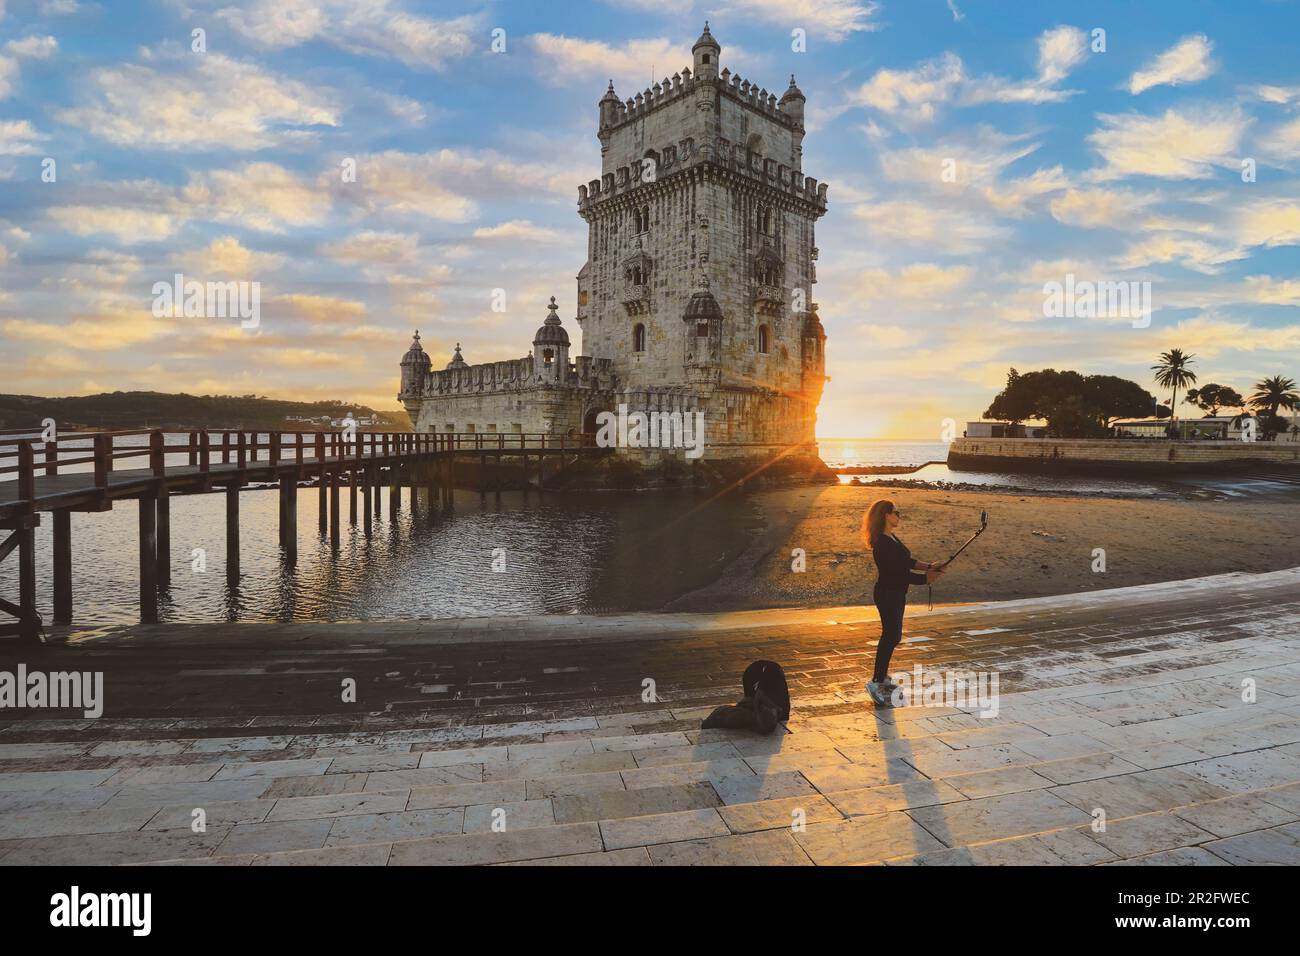 Lisbona - Portogallo, 5 novembre 2018: La Torre Belem è una fortificazione medievale del castello sul fiume Tago. Oggi è utilizzato come museo. Foto Stock